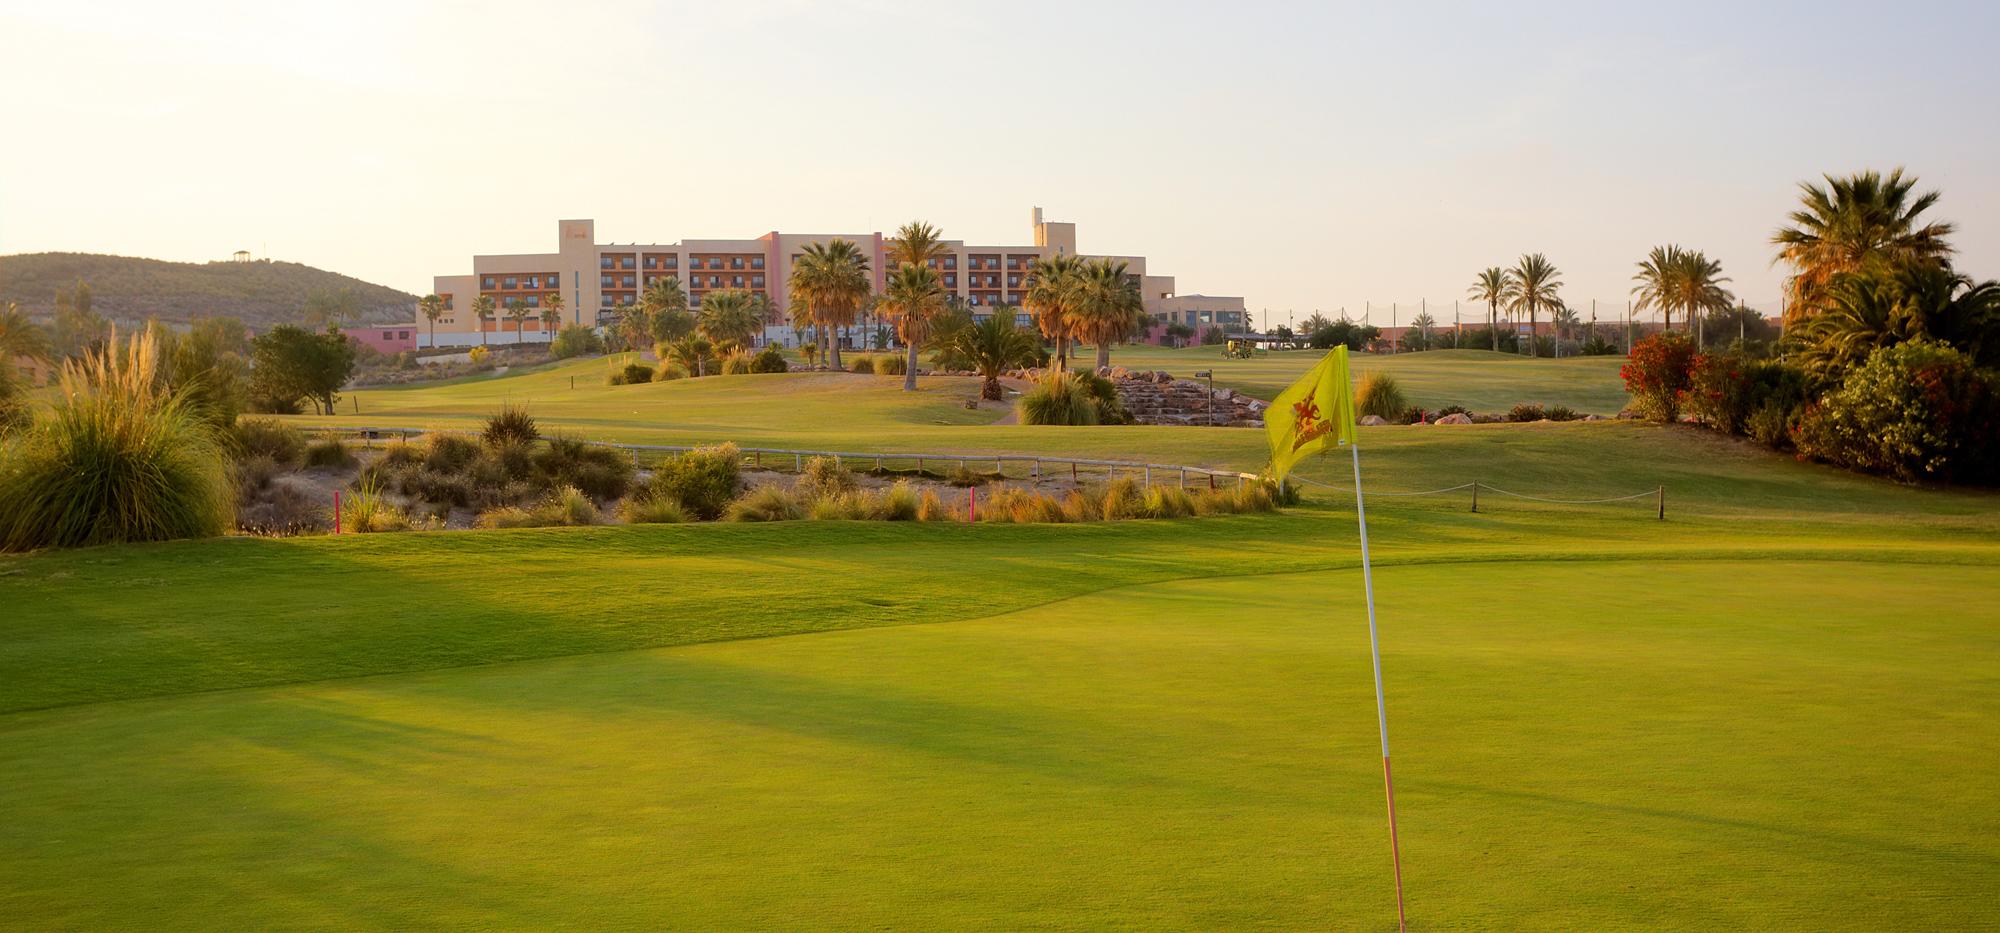 The Valle del Este Golf Course's impressive golf course situated in amazing Costa Almeria.